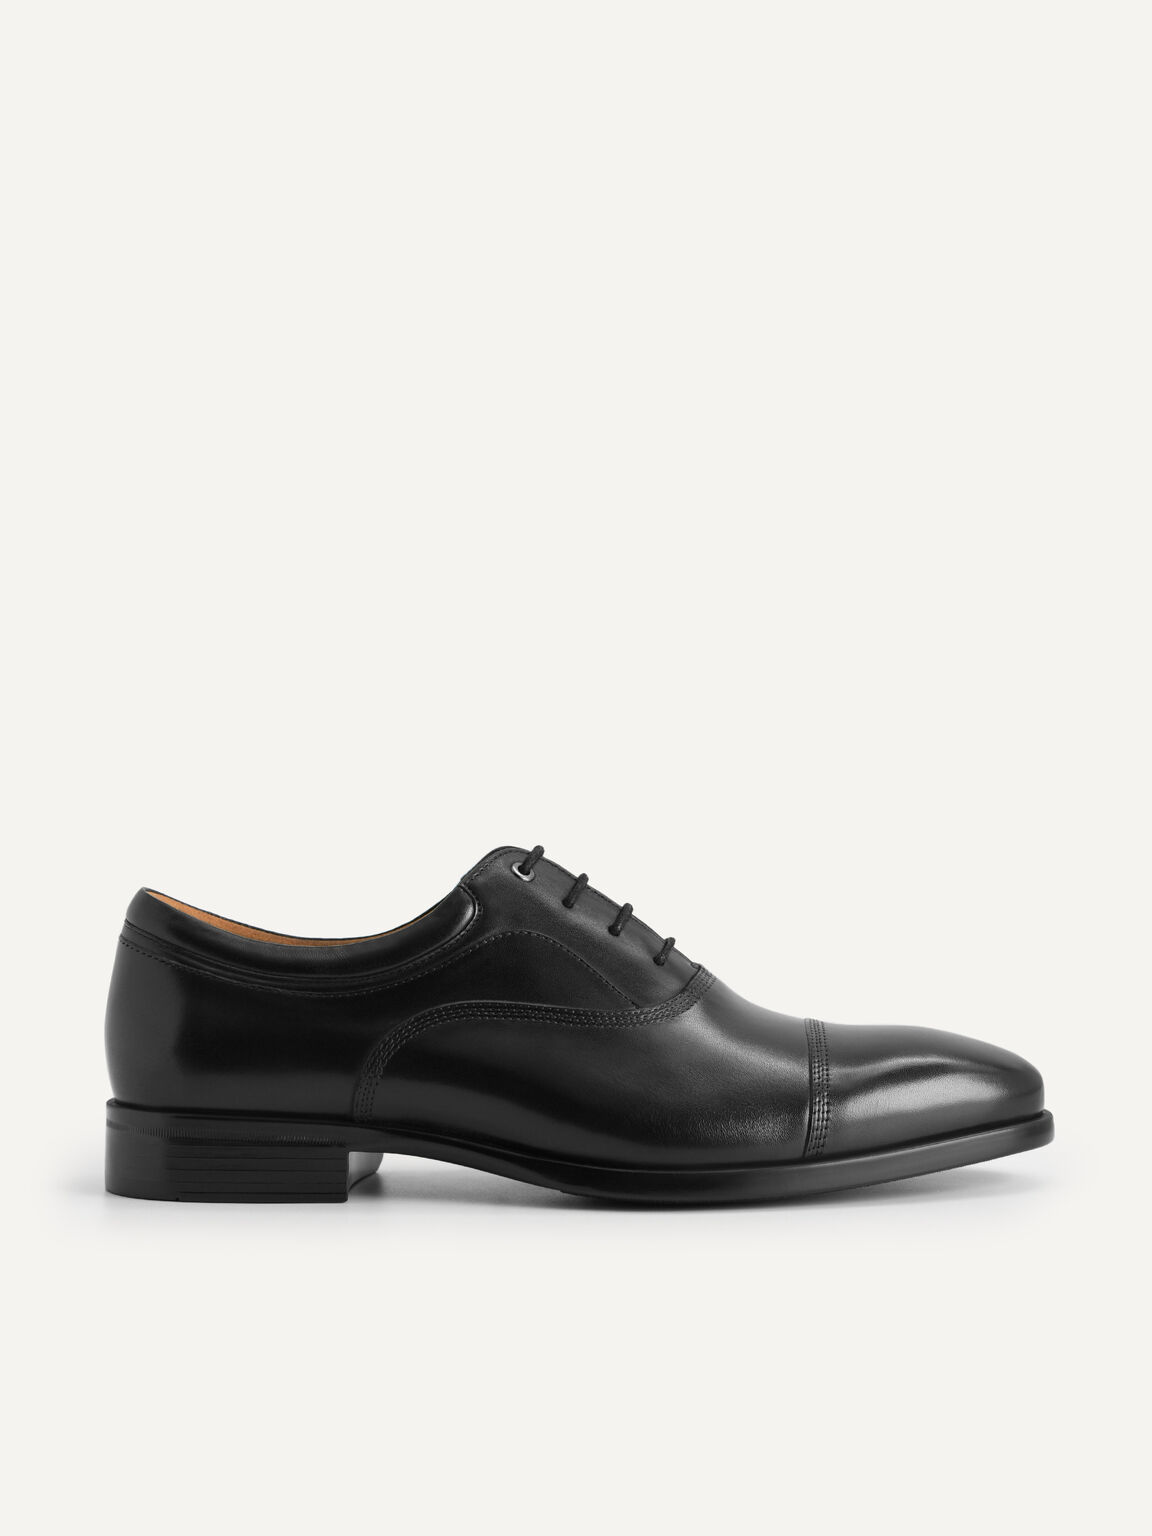 皮革牛津鞋, 黑色, hi-res